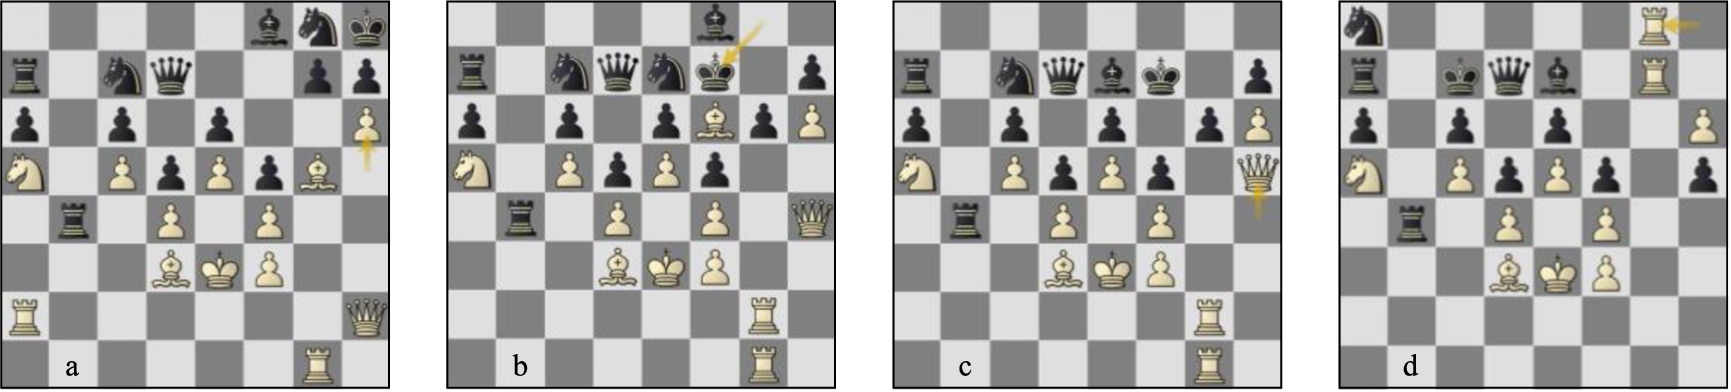 Game 60 St-Lc (a) p145b, (b) p149w, (c) p150b, (d) p155b.